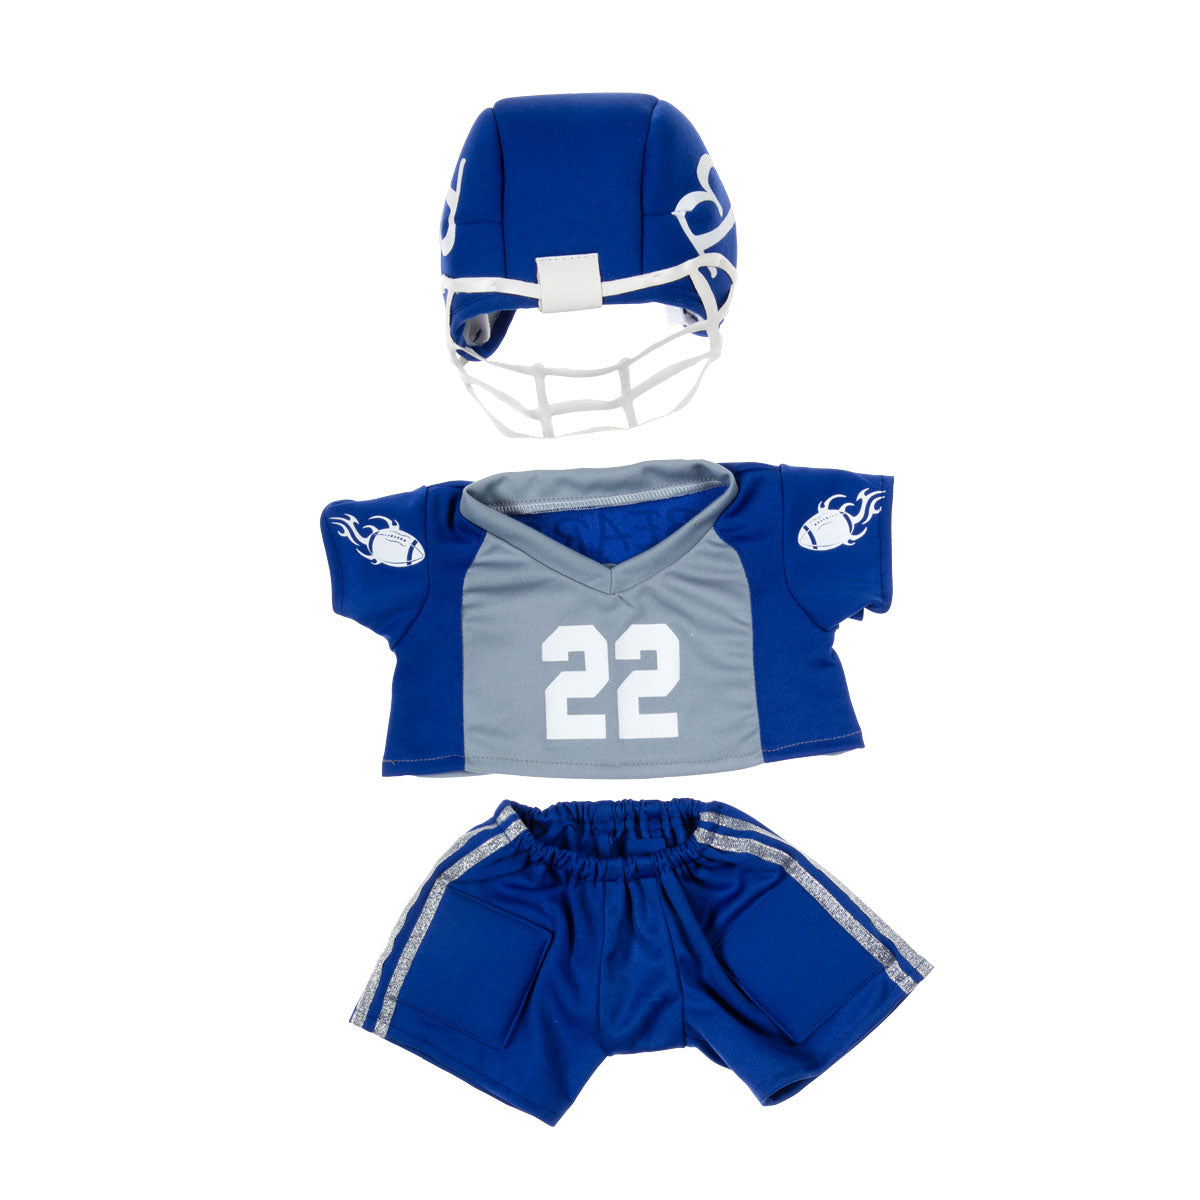 Football Player uniform for 16 inch stuffed doll, bear or friend